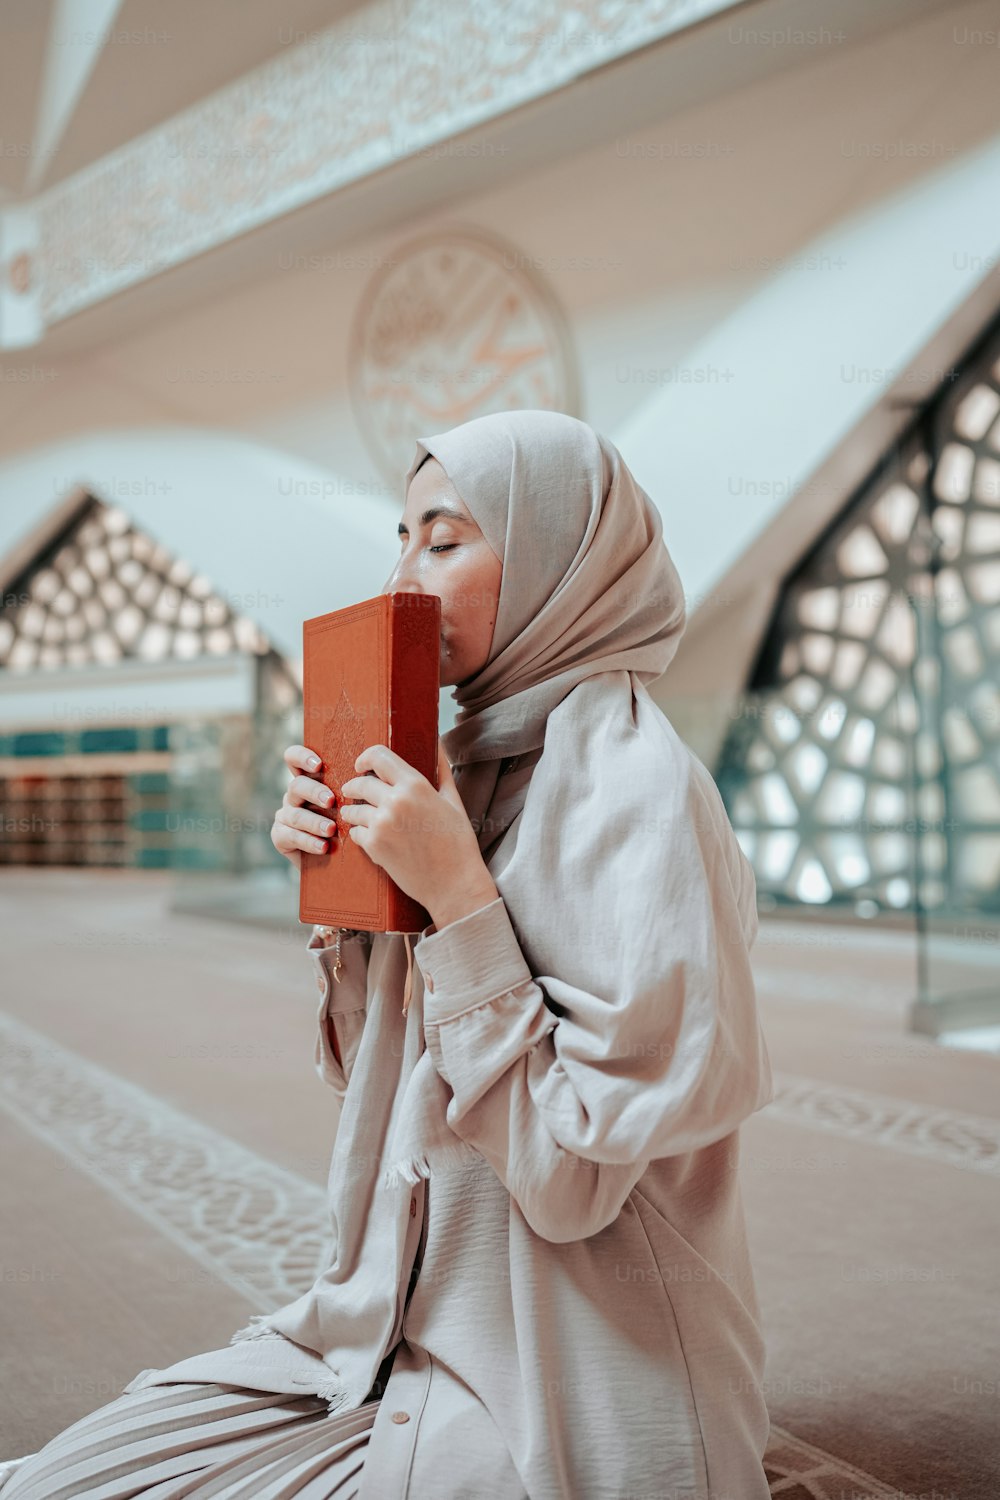 Una donna con l'hijab sta leggendo un libro